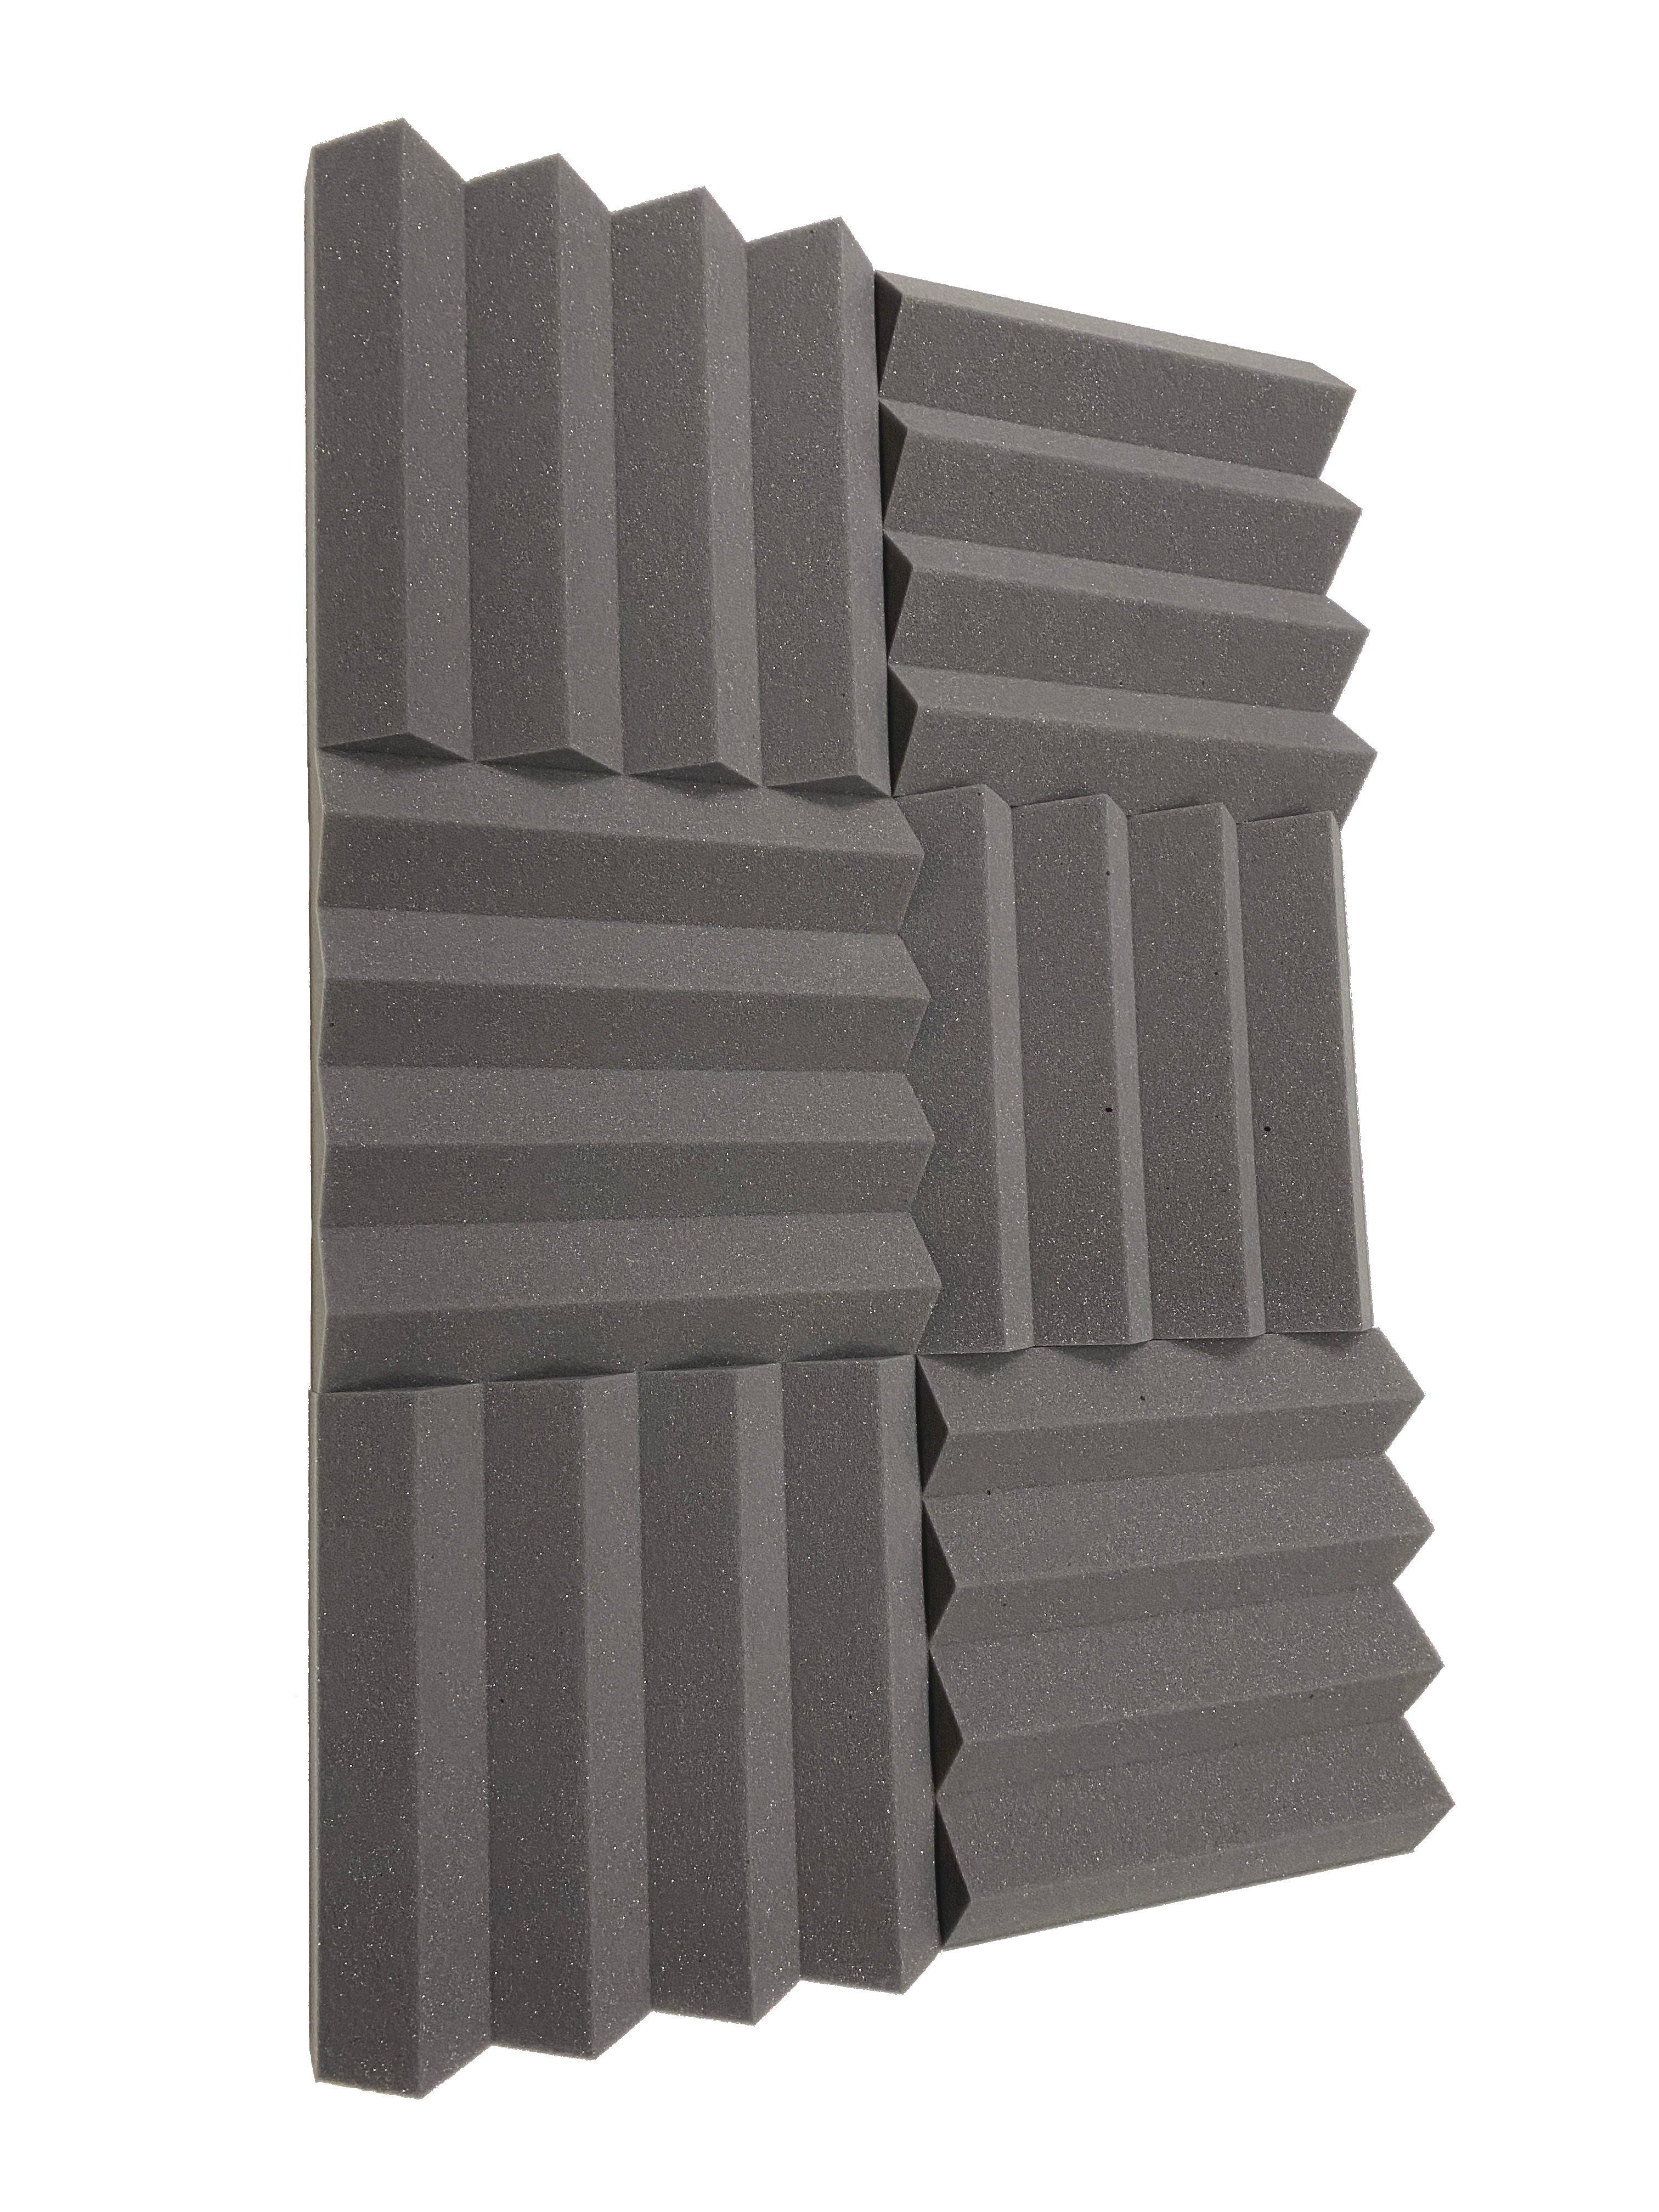 Wedge PRO 12" Acoustic Studio Foam Tile Pack - 24 Tiles, 2.2qm Coverage